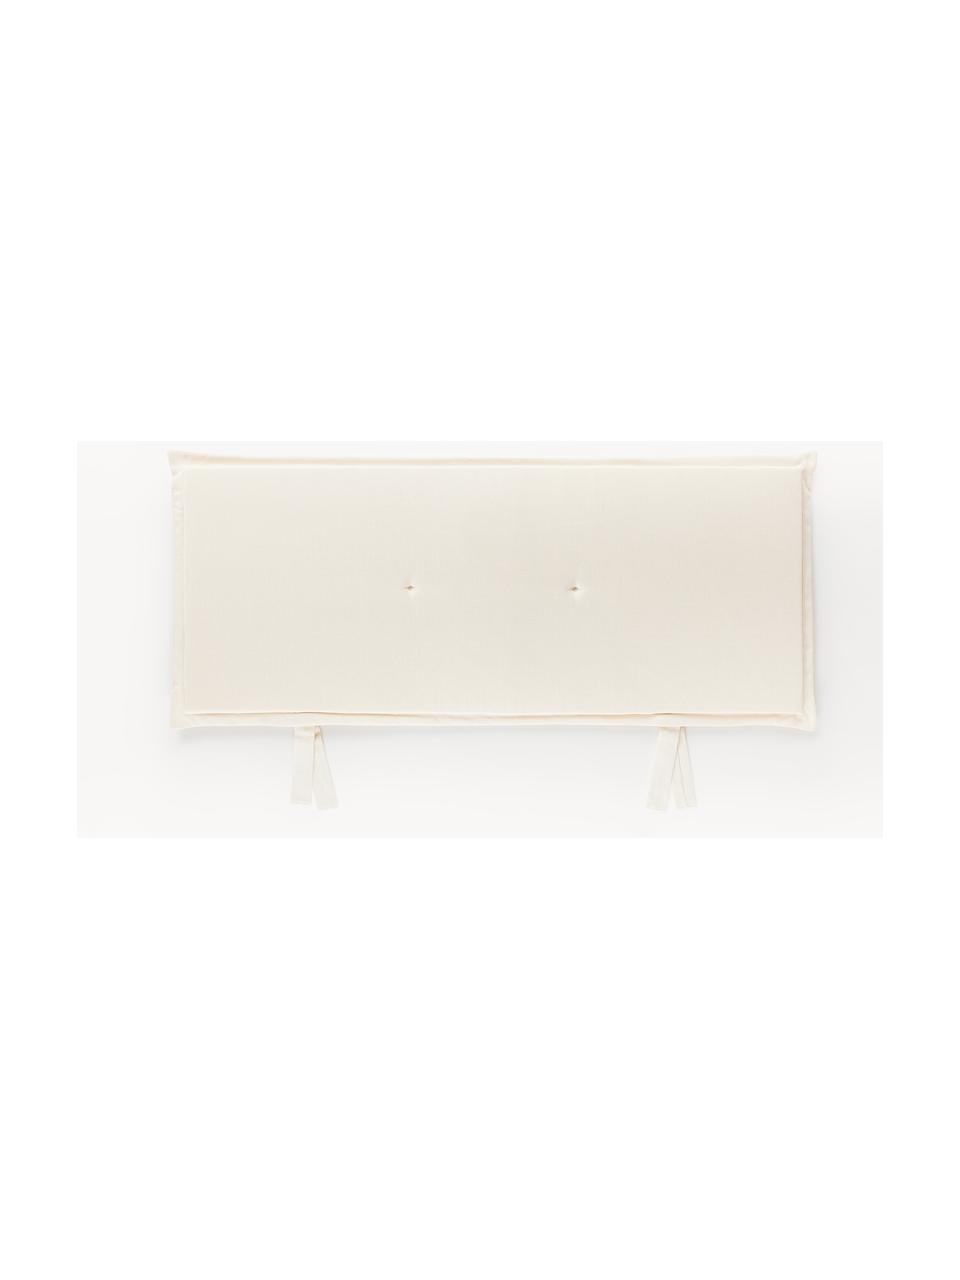 Jednobarevný podsedák na lavici Ortun, Tlumeně bílá, Š 48 x D 150 cm